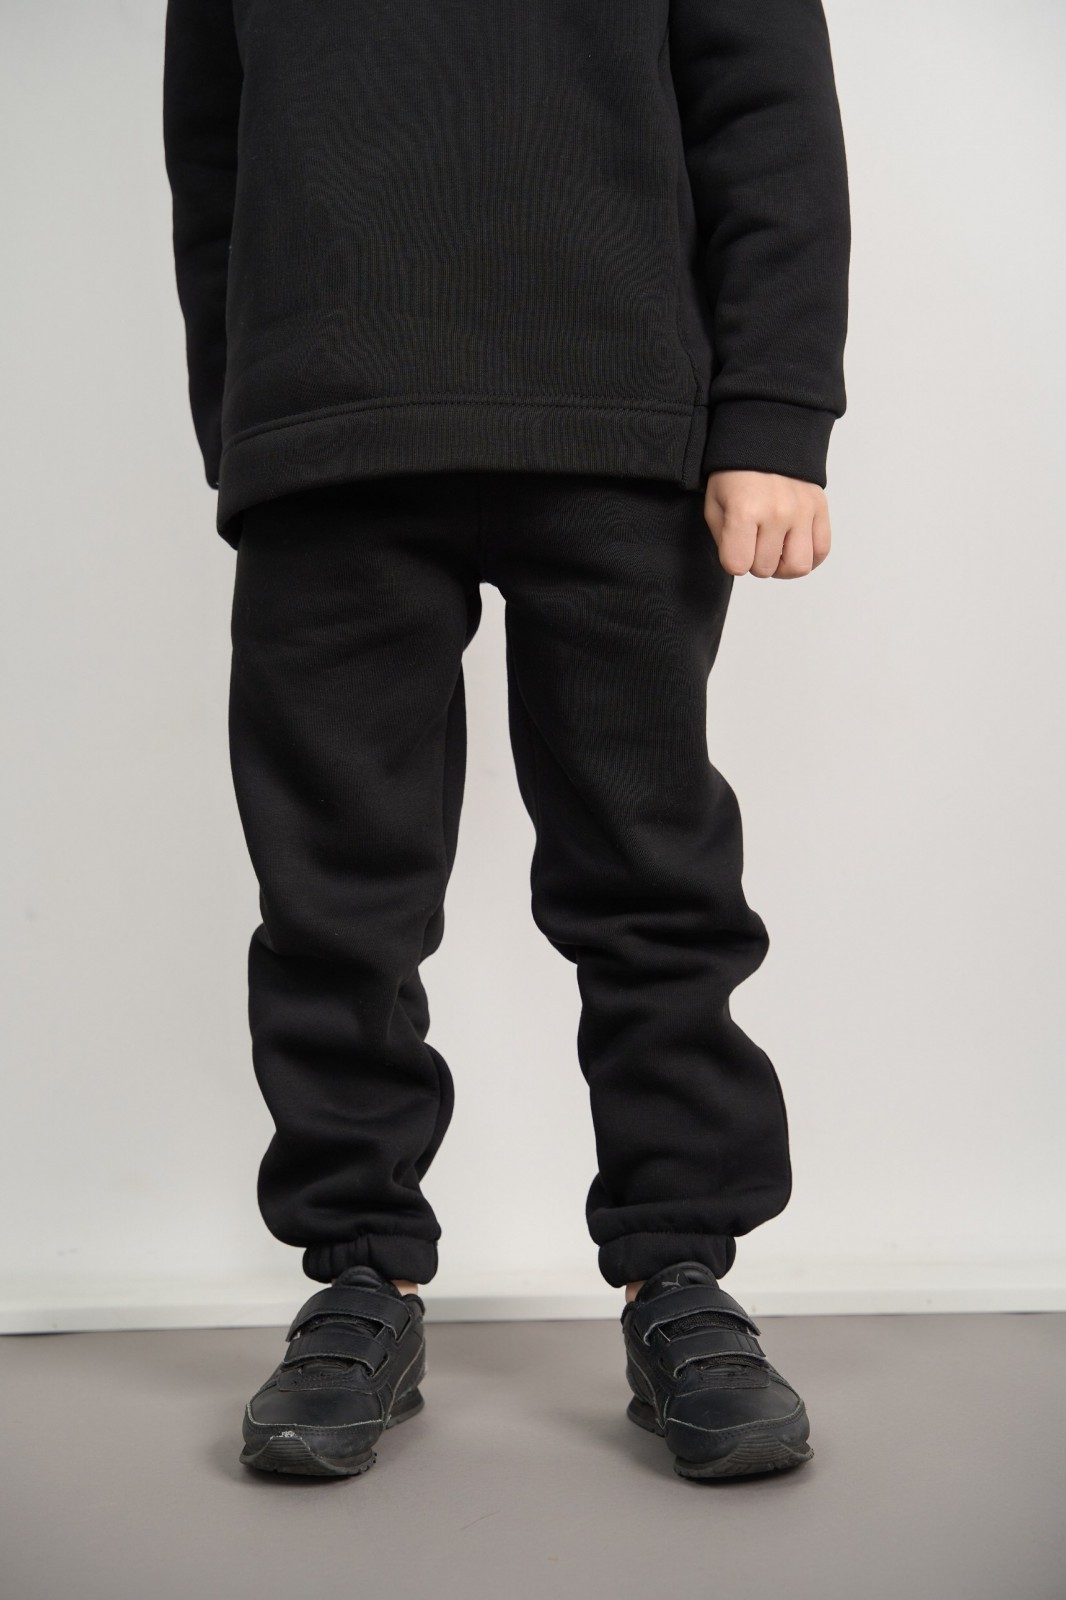 Дитячий спортивний костюм для хлопчика колір чорний р.170 444191